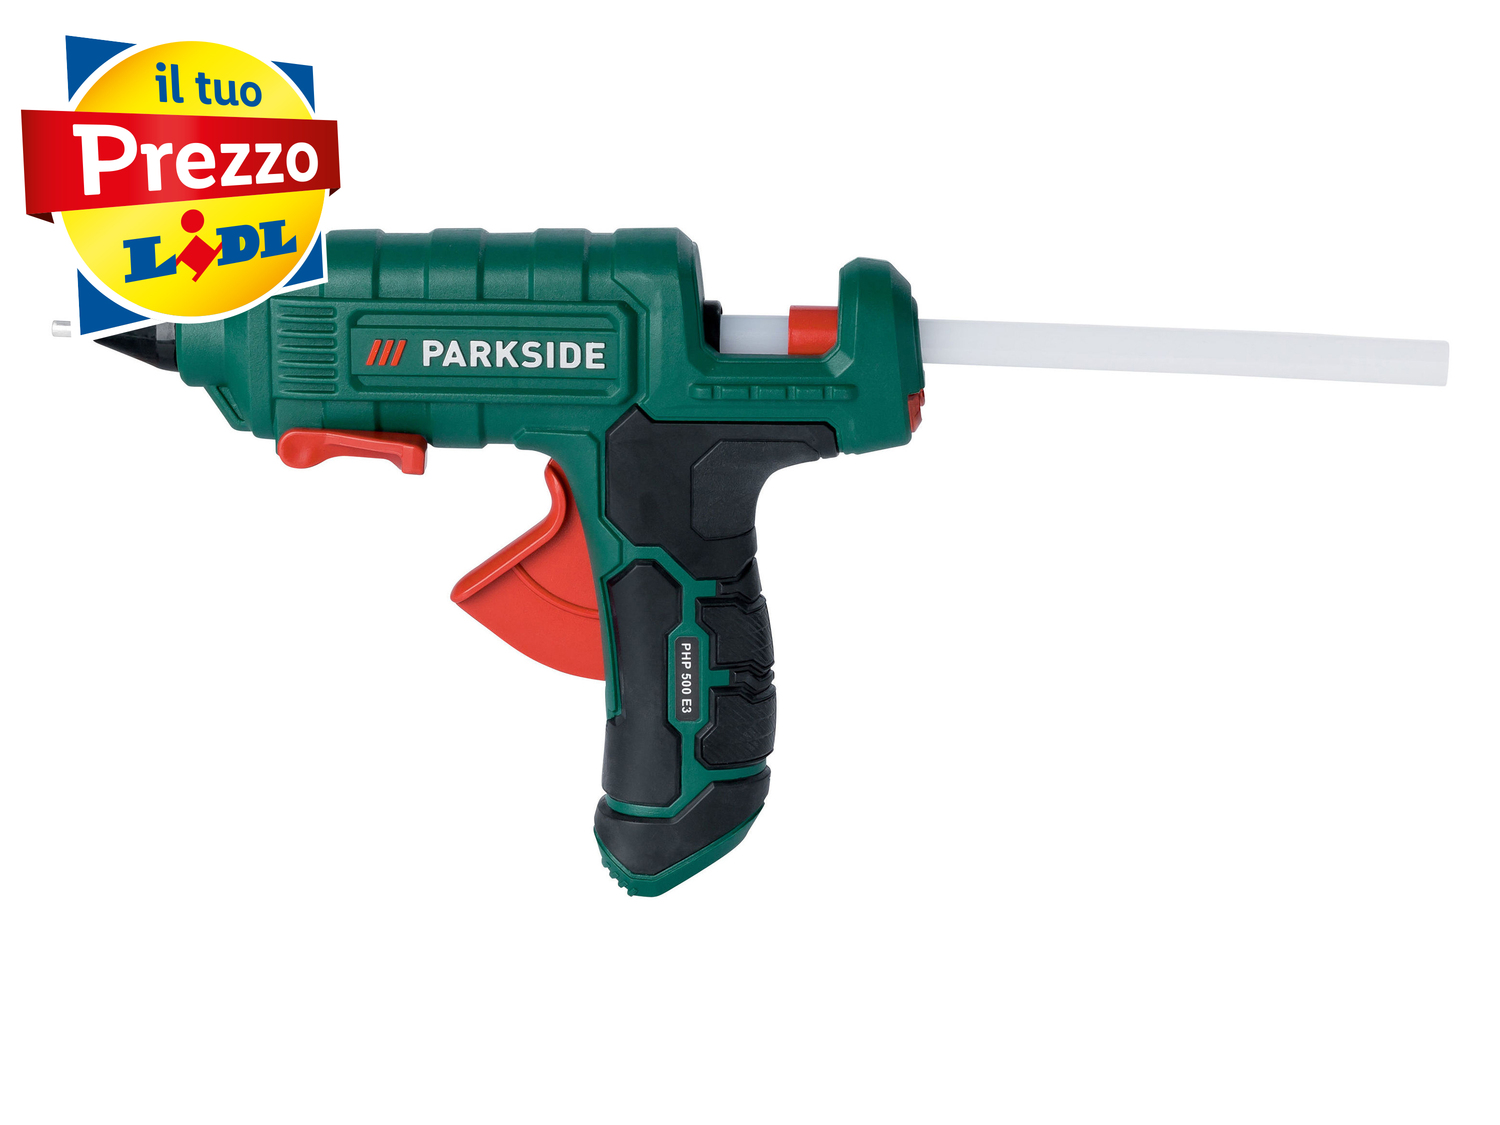 Pistola per colla a caldo Parkside PHP 500 E3, prezzo 8.99 € 
- Utilizzabile ...